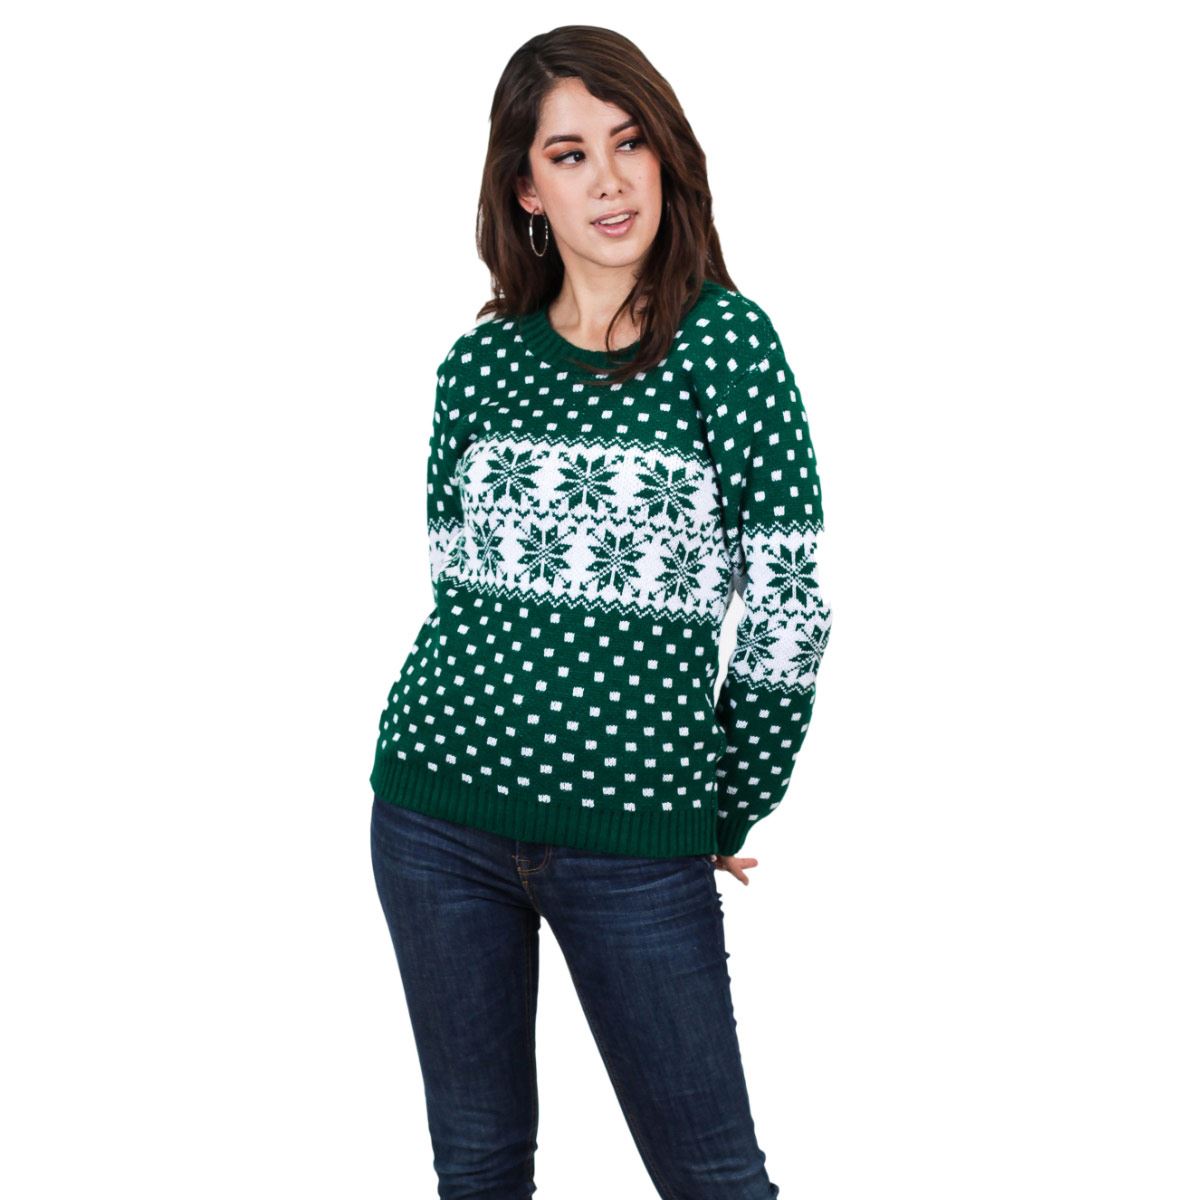 Suéter ugly navideño de noche buena para mujer 59 - verde